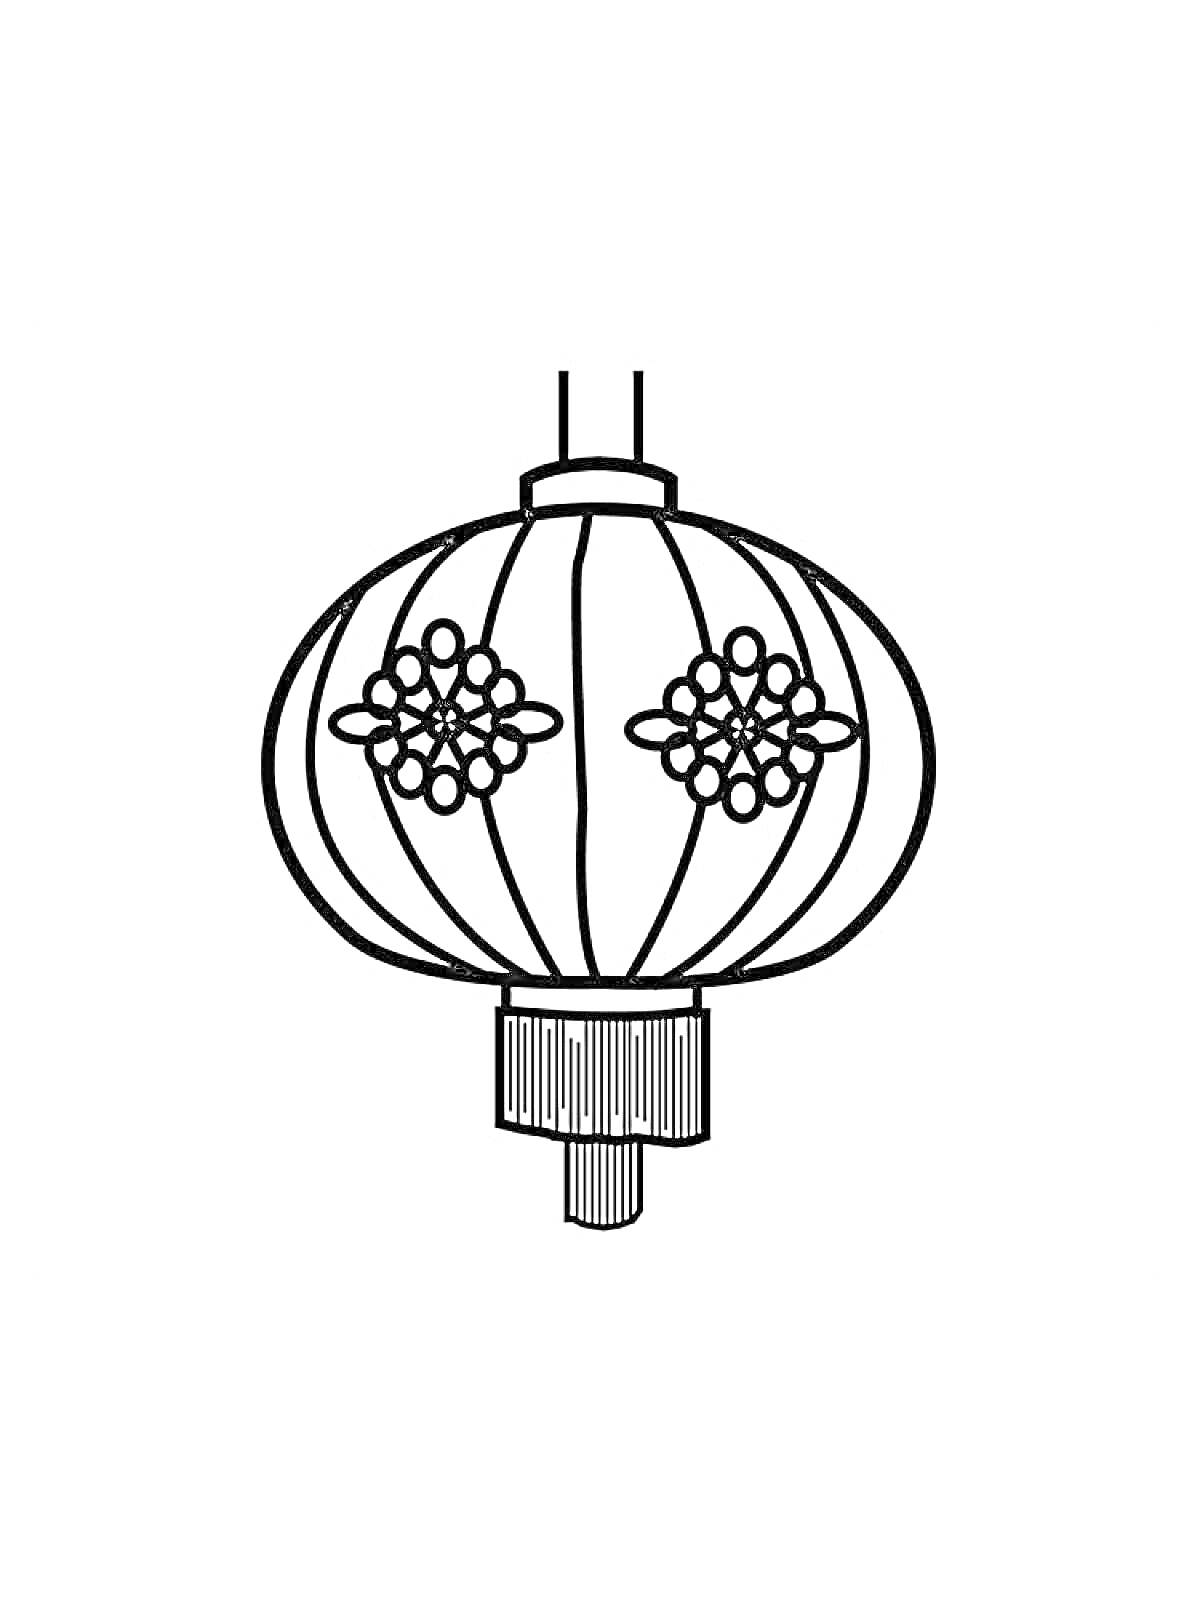 Раскраска Китайский бумажный фонарь с декоративными узорами